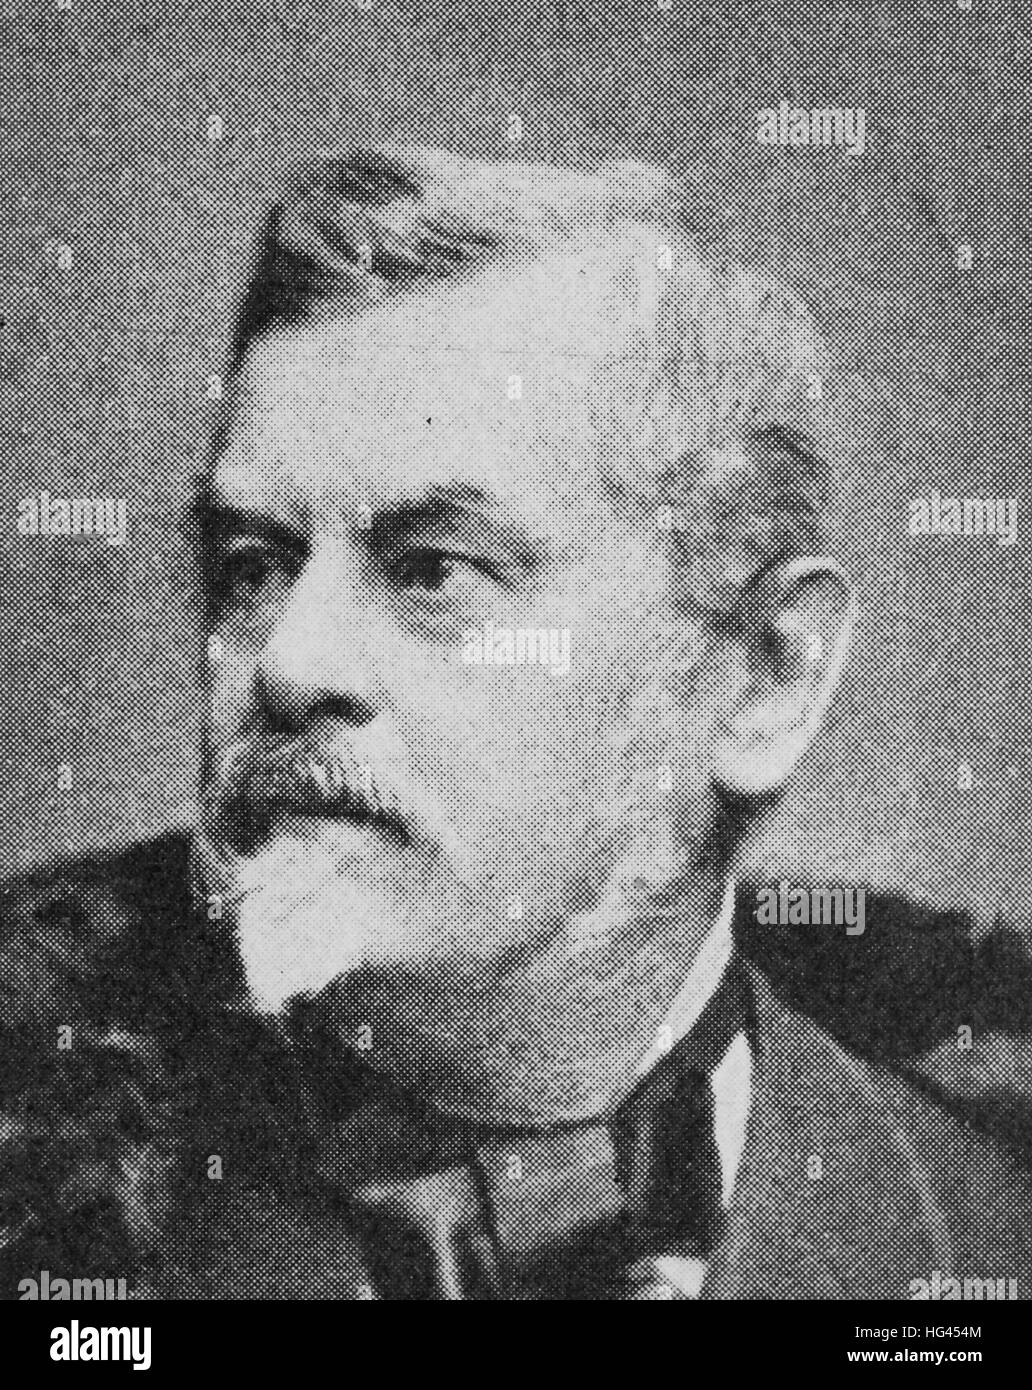 Carl Friedrich Wilhelm Jordan, parfois abrégé en Wilhelm Jordan, 8 février 1819 - 25 juin 1904, était un écrivain et homme politique allemand, reproduction d'une photo de l'année 1895, l'amélioration numérique Banque D'Images